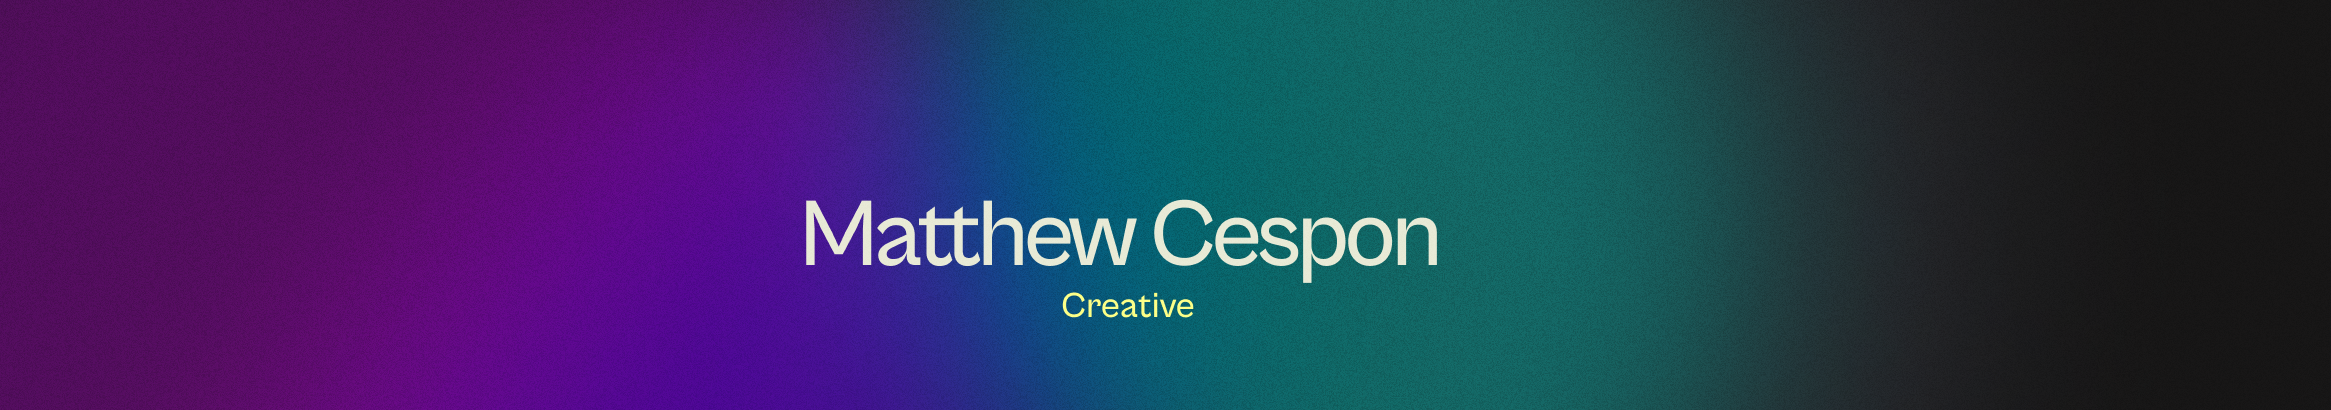 Matthew Cespon profil başlığı